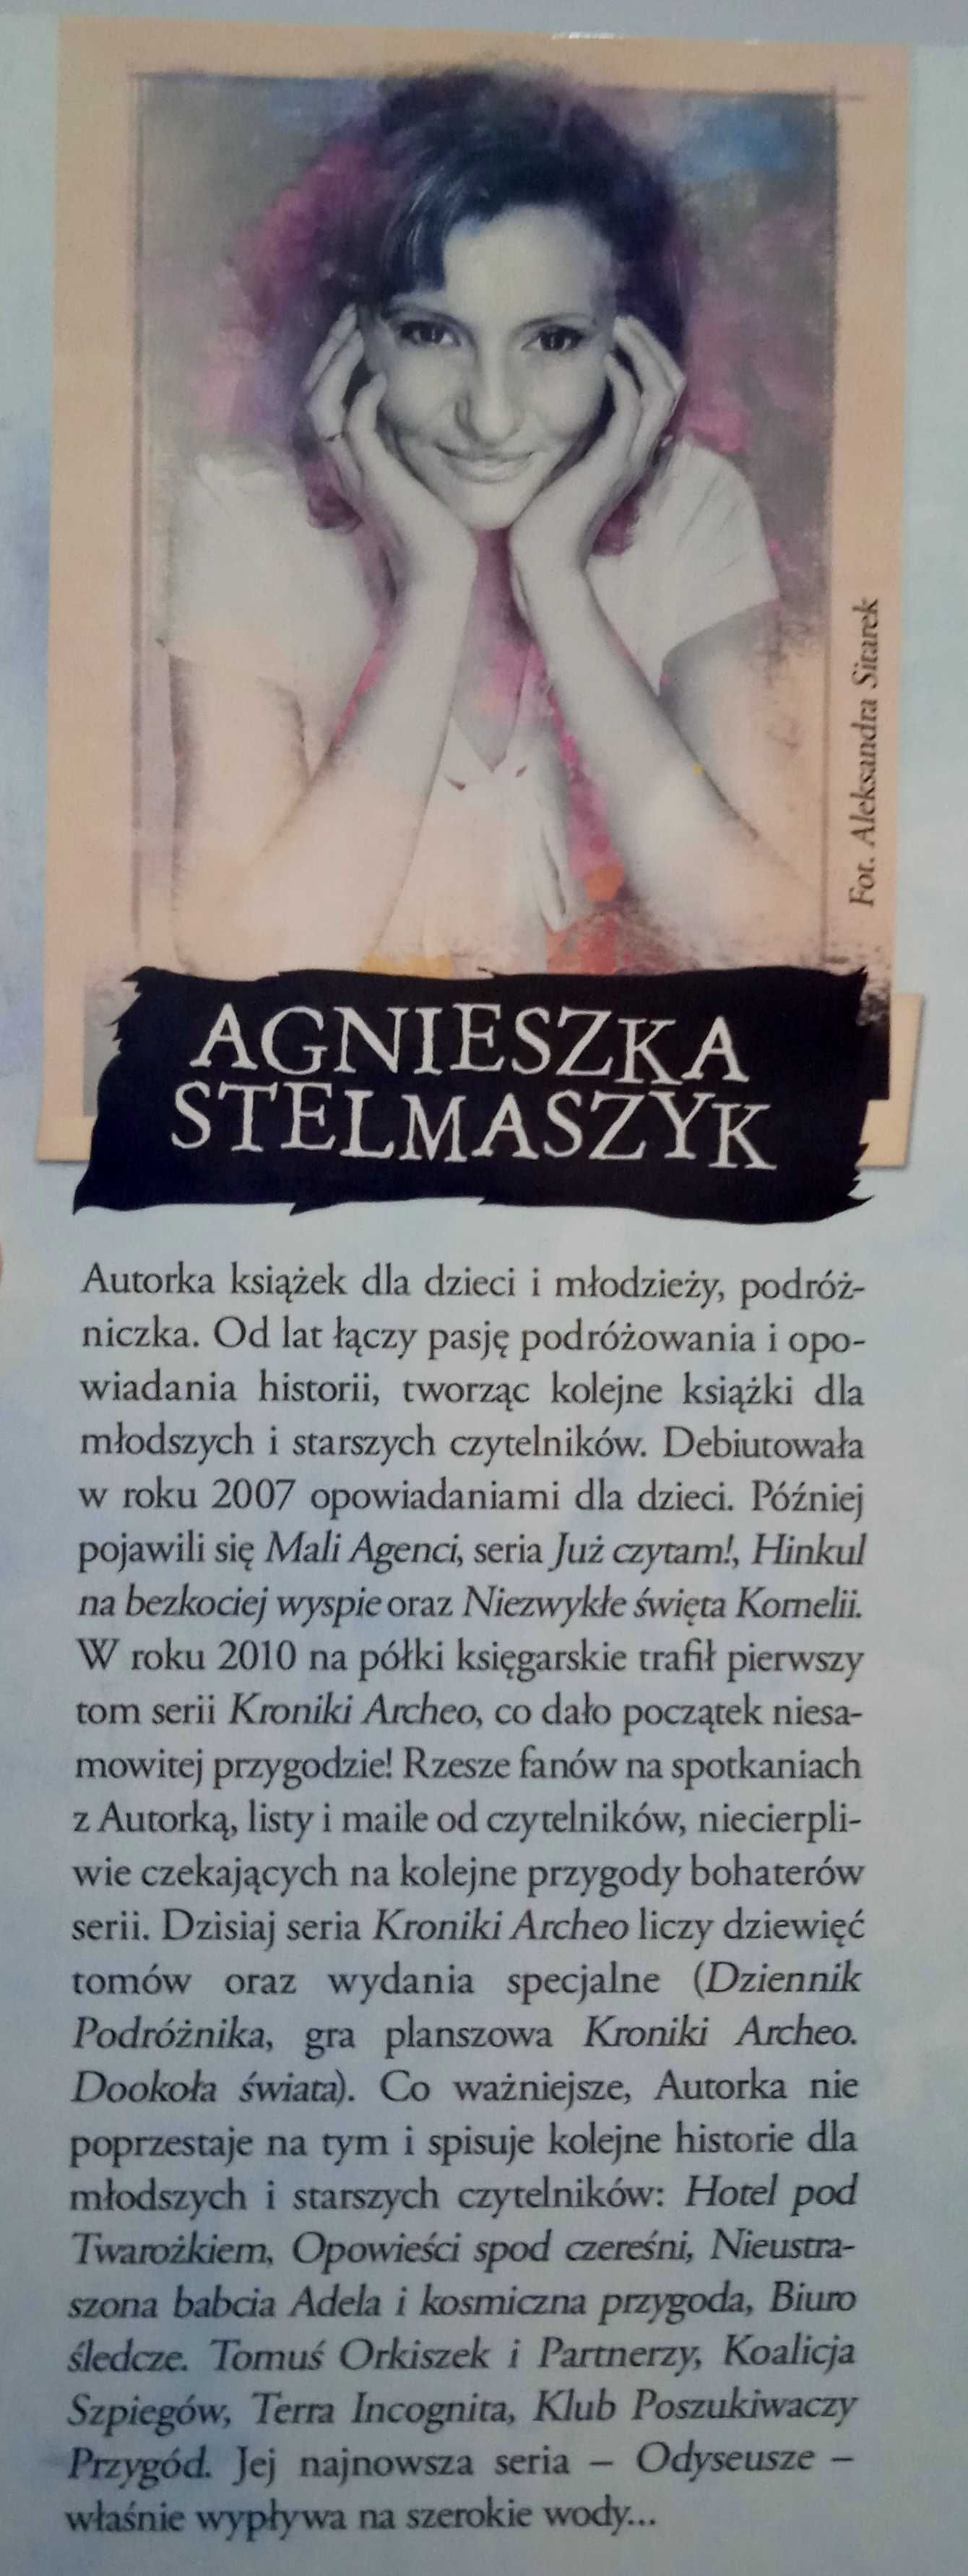 książka "Odyseusze. Gwiazda morza" Agnieszka Stelmaszyk